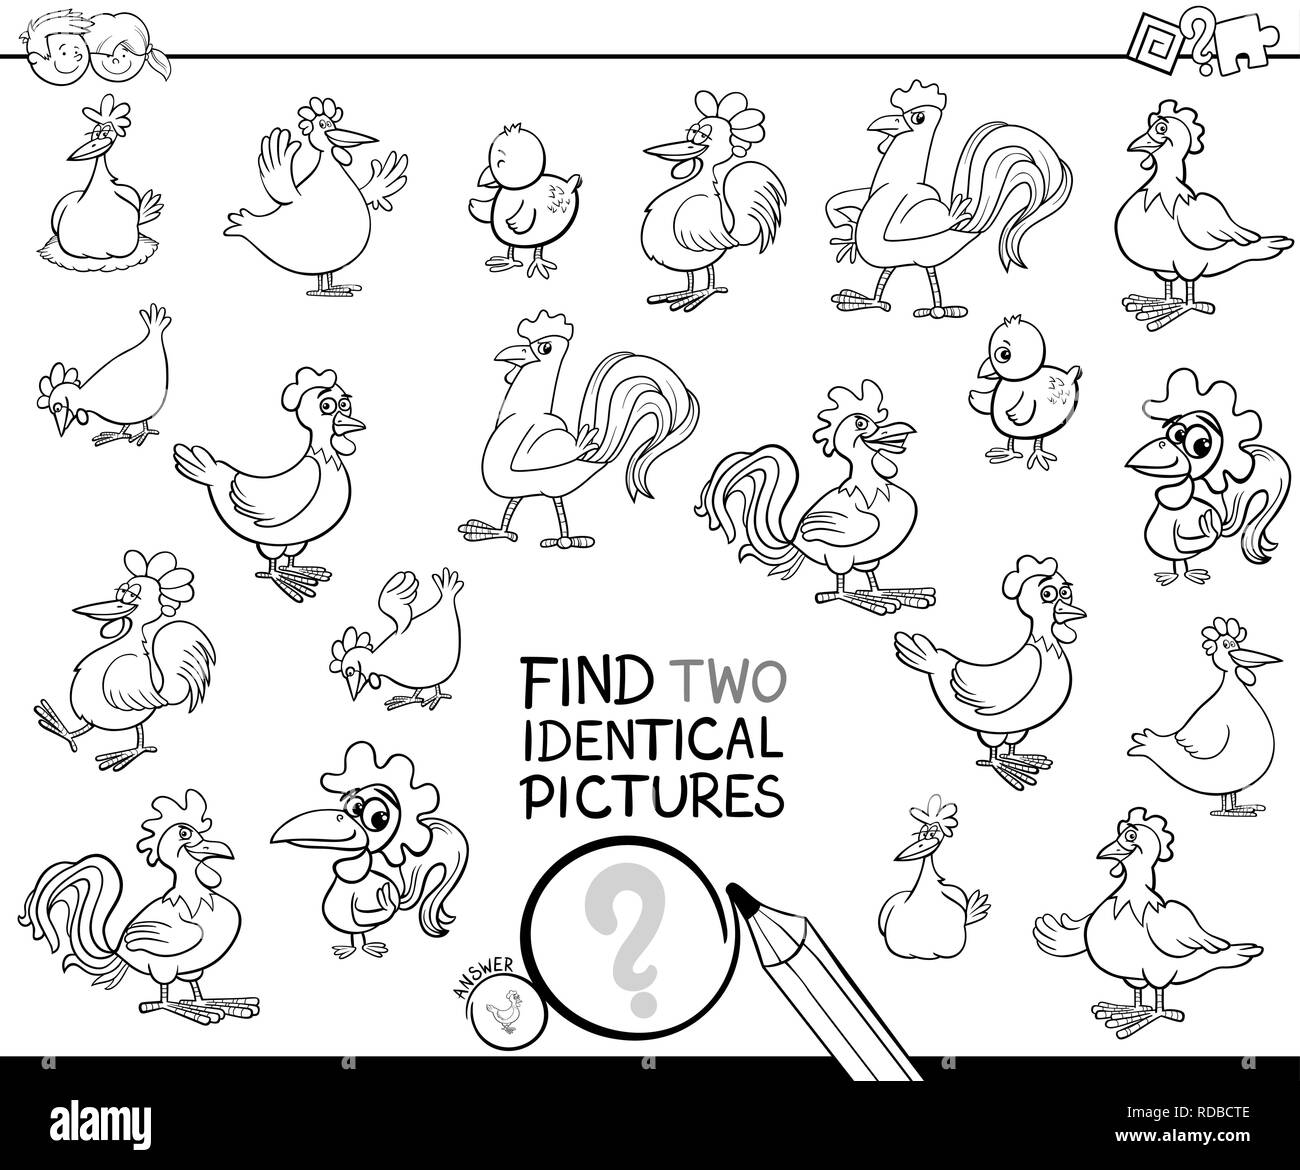 Schwarze und Weiße Cartoon Illustration, zwei identische Bilder Lernspiel für Kinder mit Hennen und Hähne Chicken Farm Animal Verwen Stock Vektor